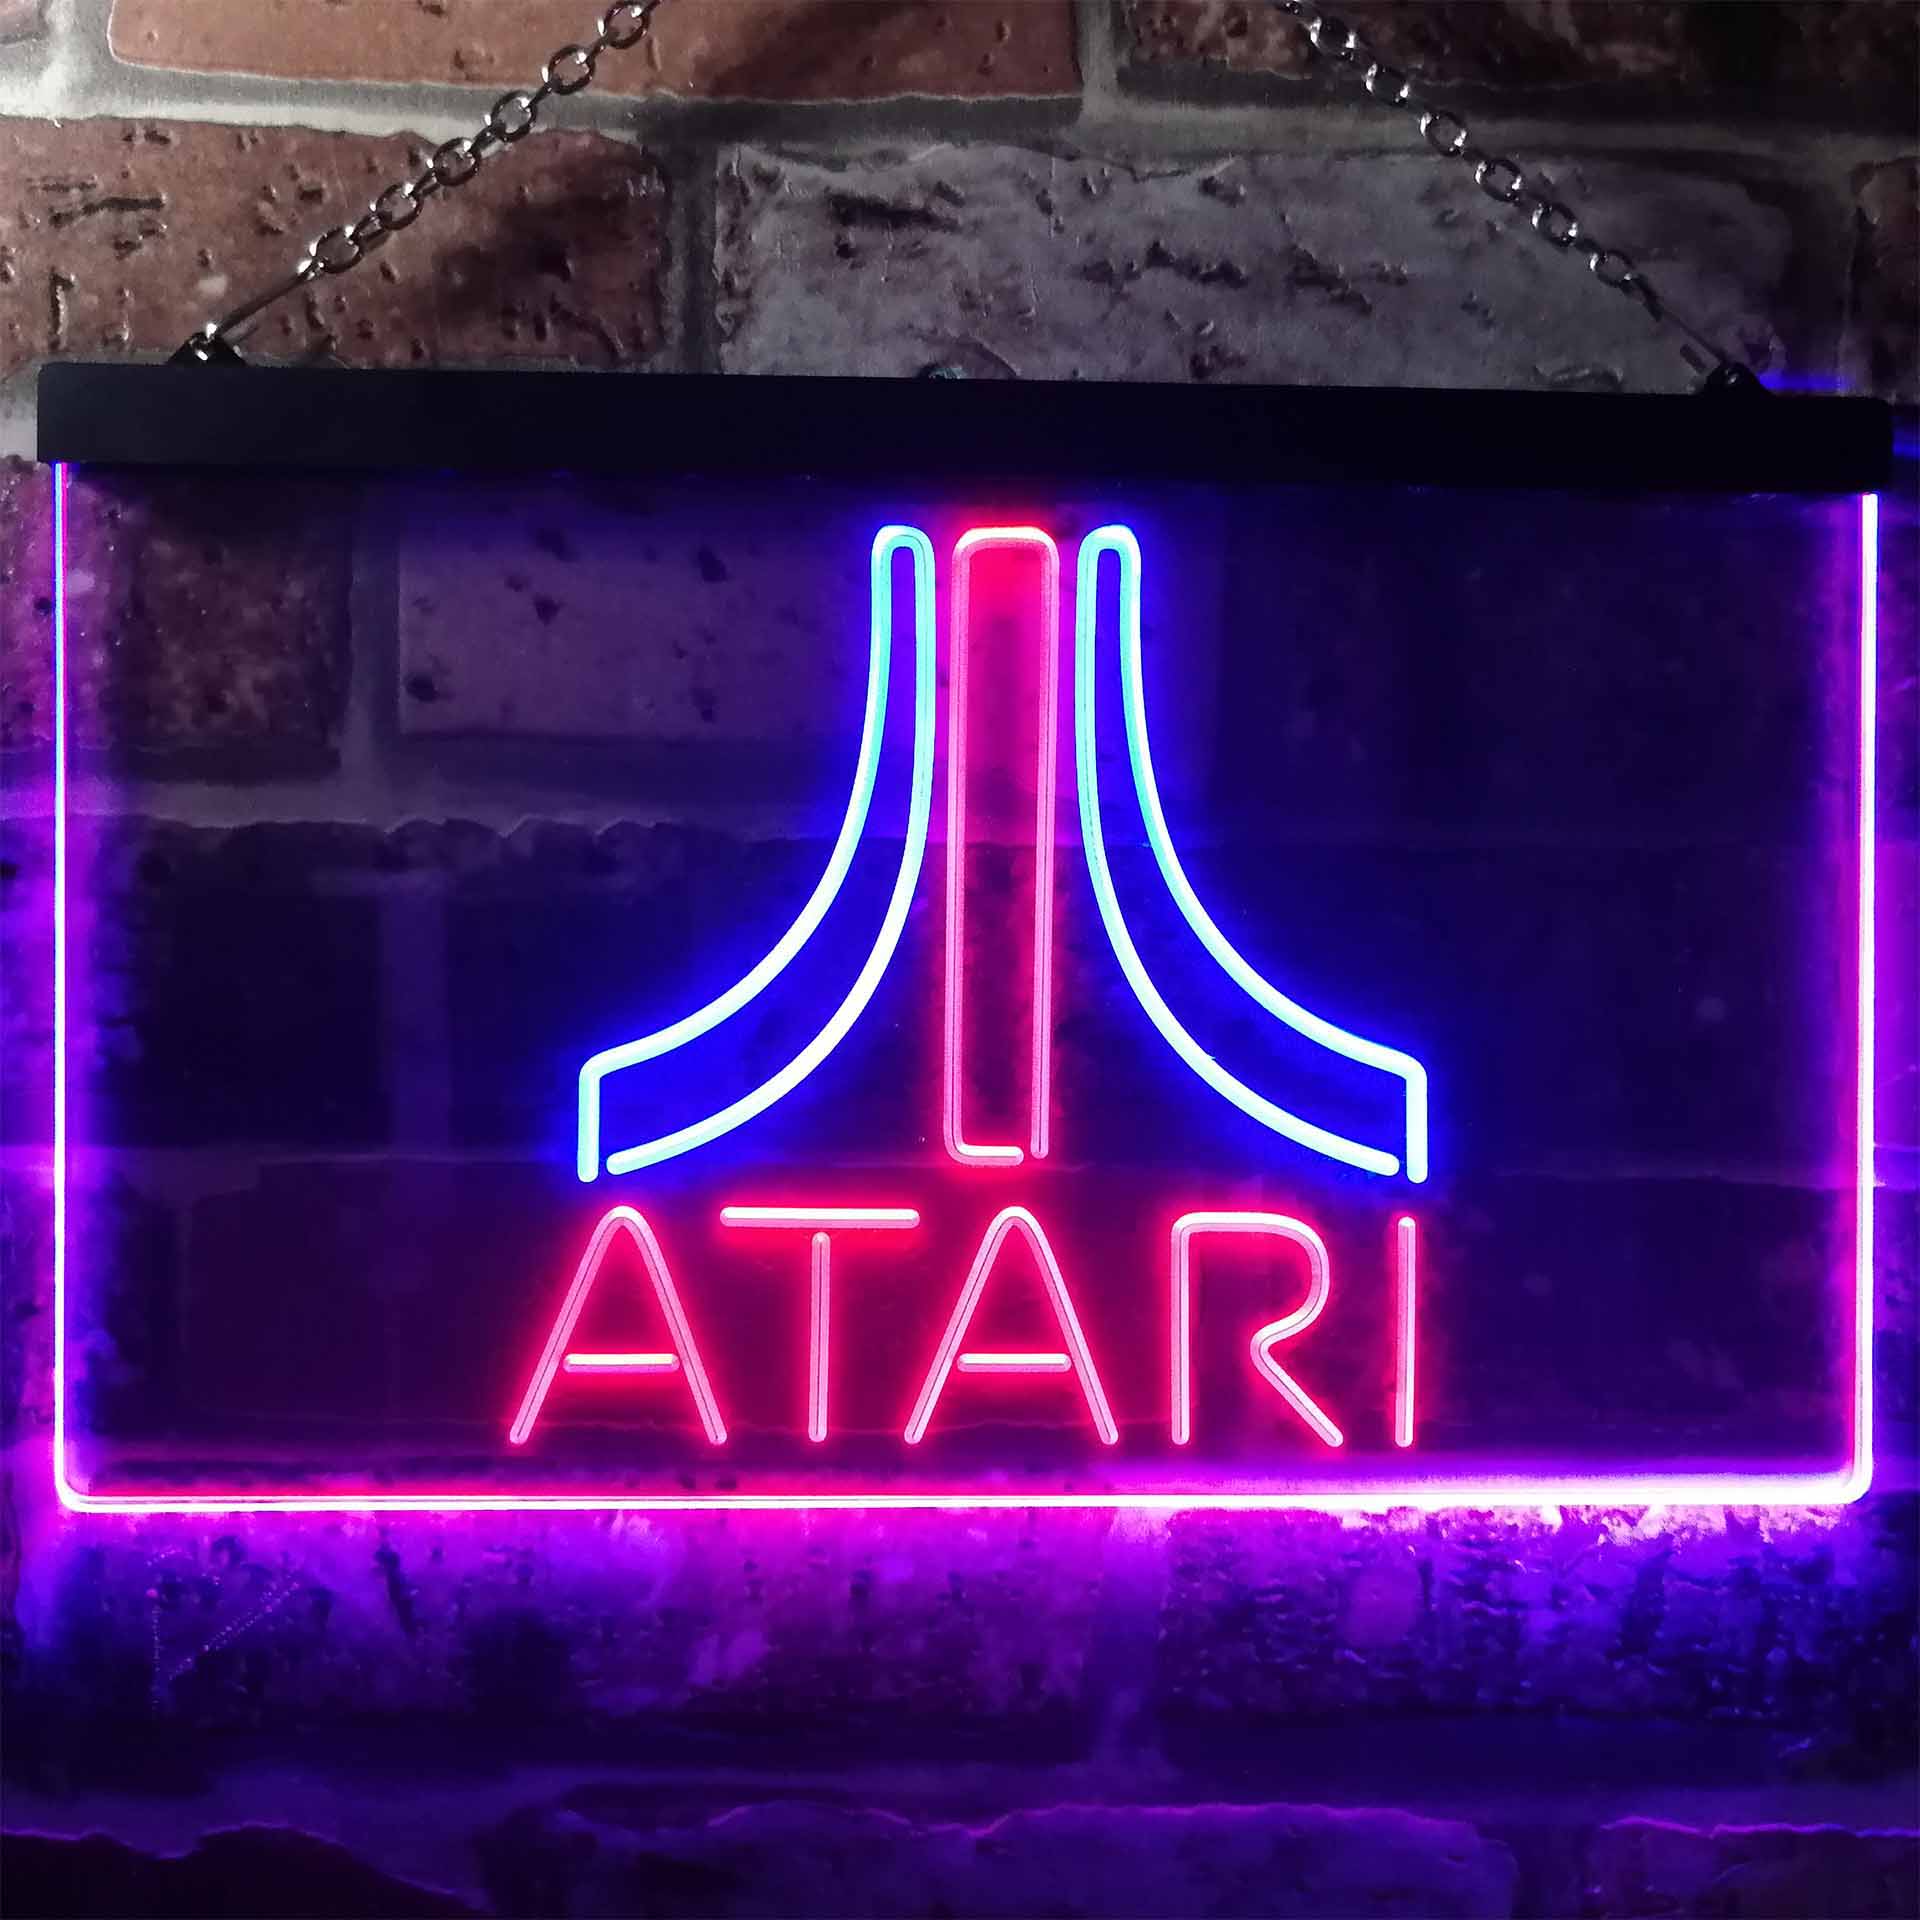 Atari Game Room Garage Neon-Like LED Sign